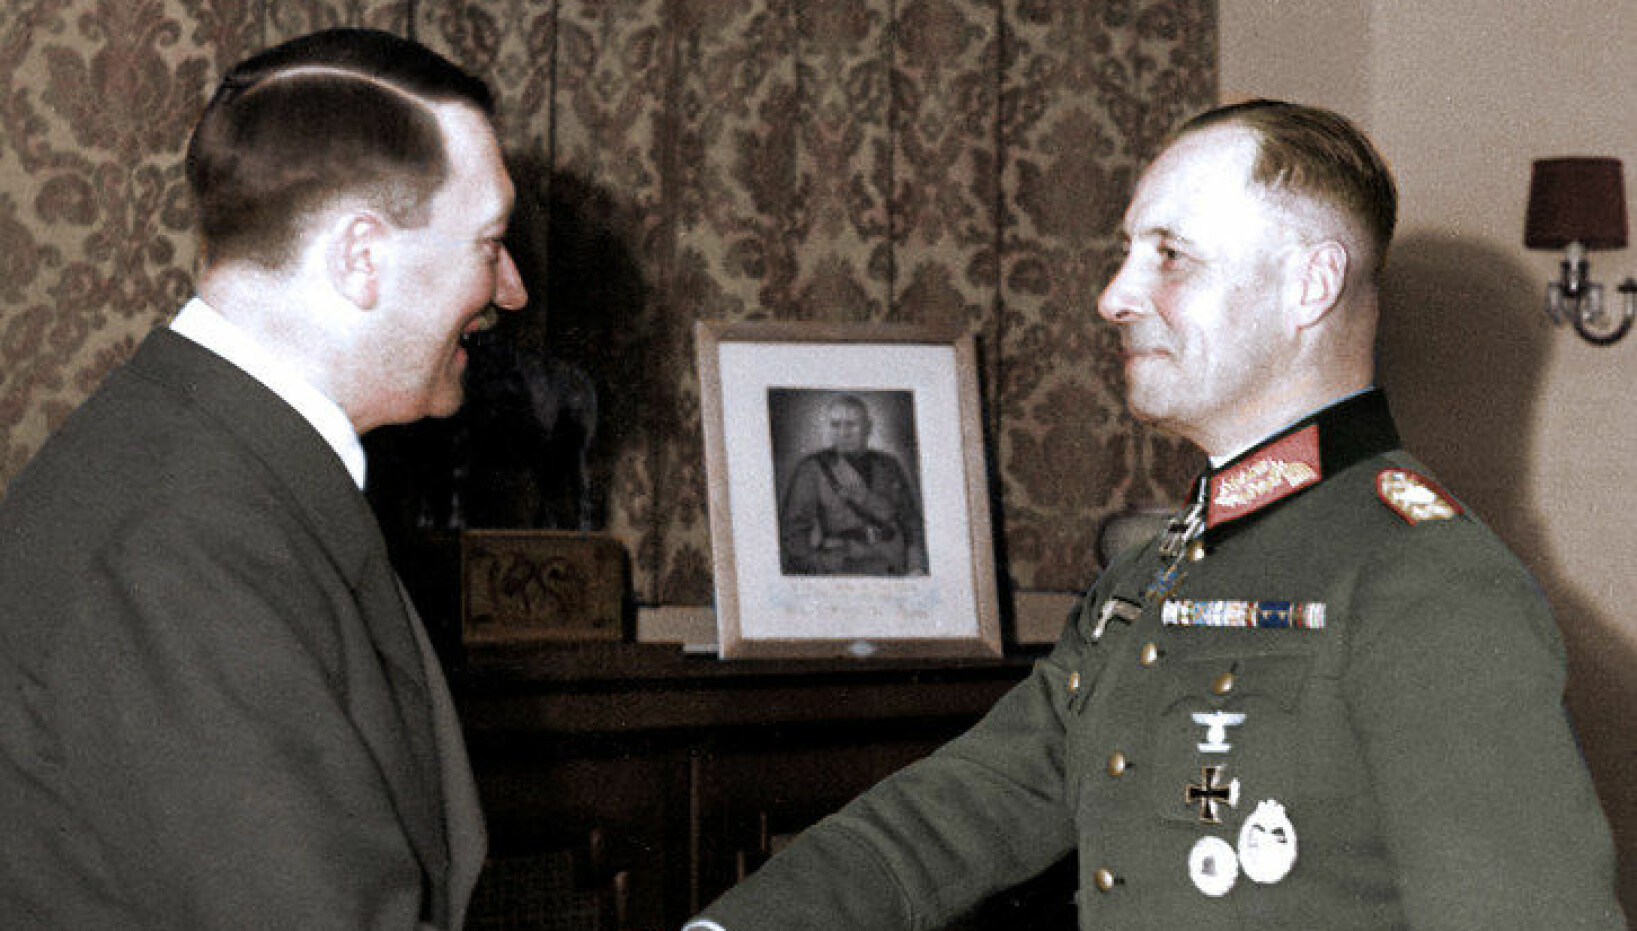 <b>LYKKELIGERE TID:</b> Erwin Rommel var lenge Hitlers favoritt, og mannen bak taktikken både i Frankrike i begynnelsen av krigen og i Afrika noe senere. Etter hvert mistet han troen på prosjektet, og forholdet kjølnet.